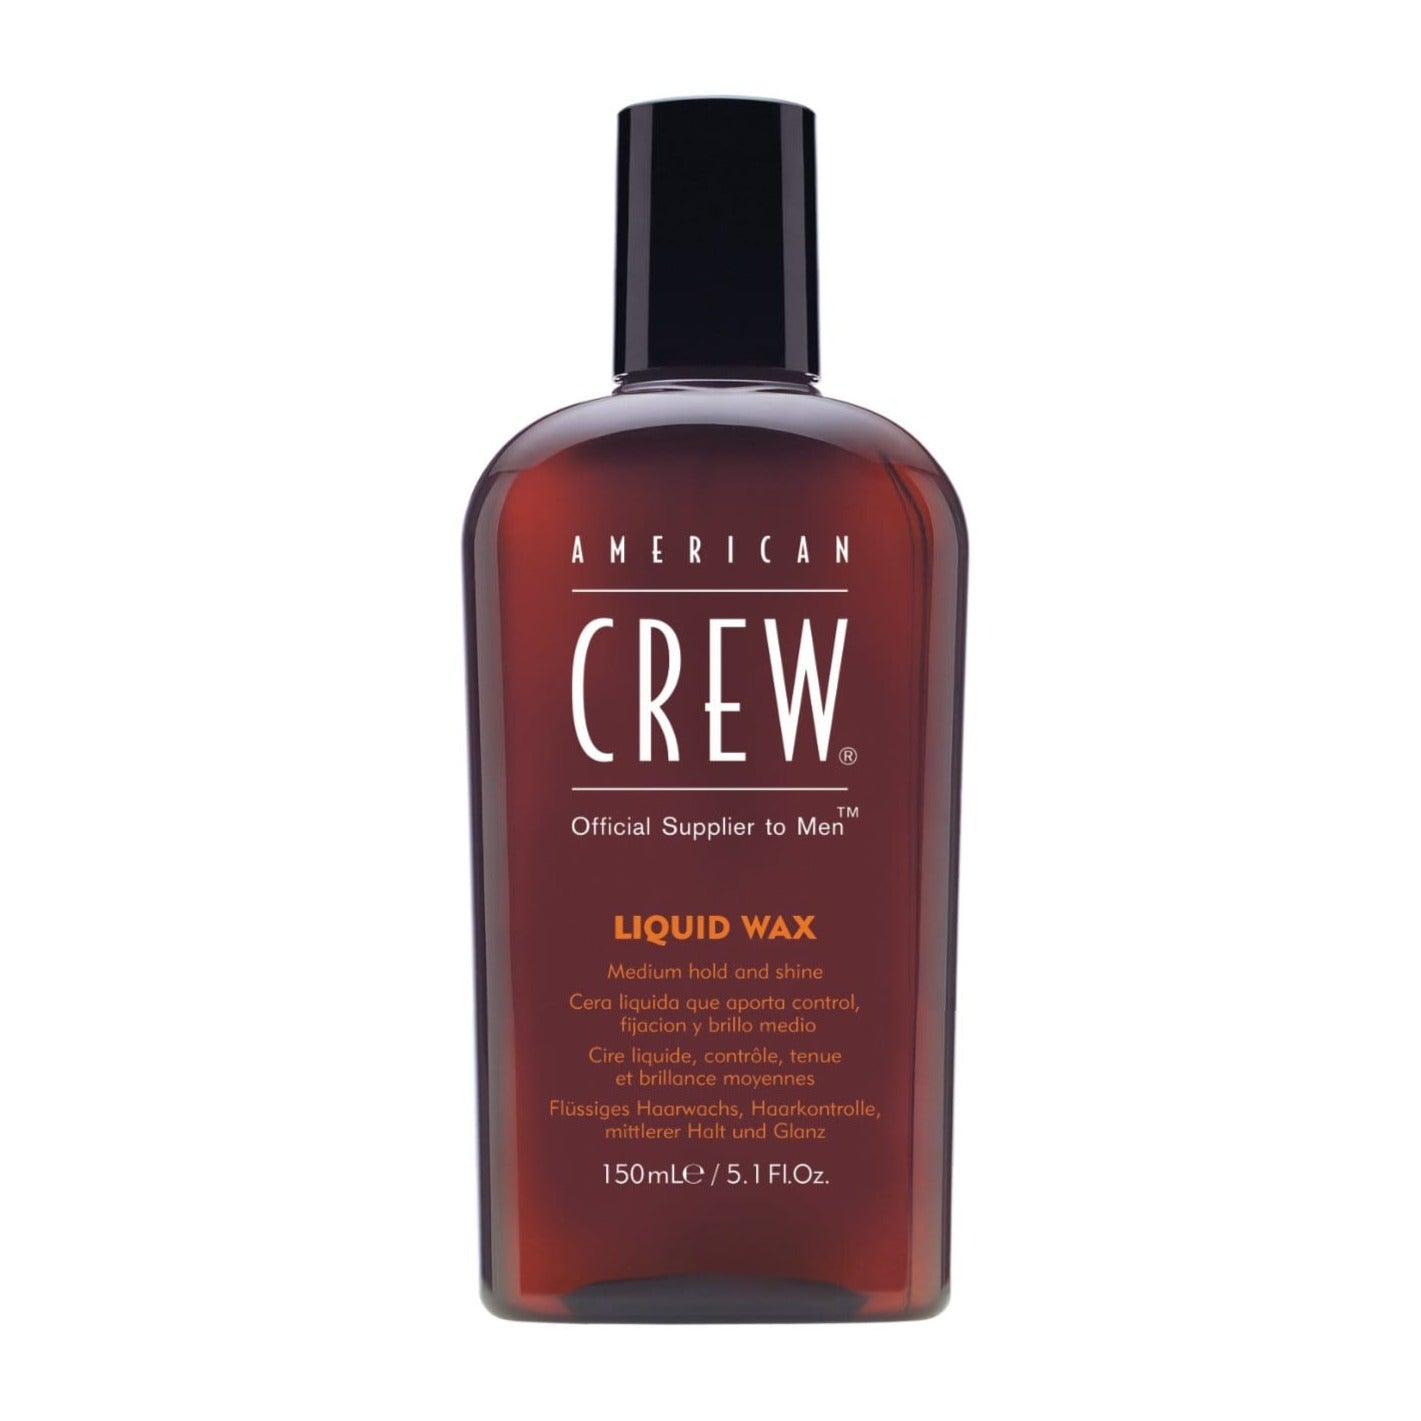 American Crew Liquid Wax - Sagema